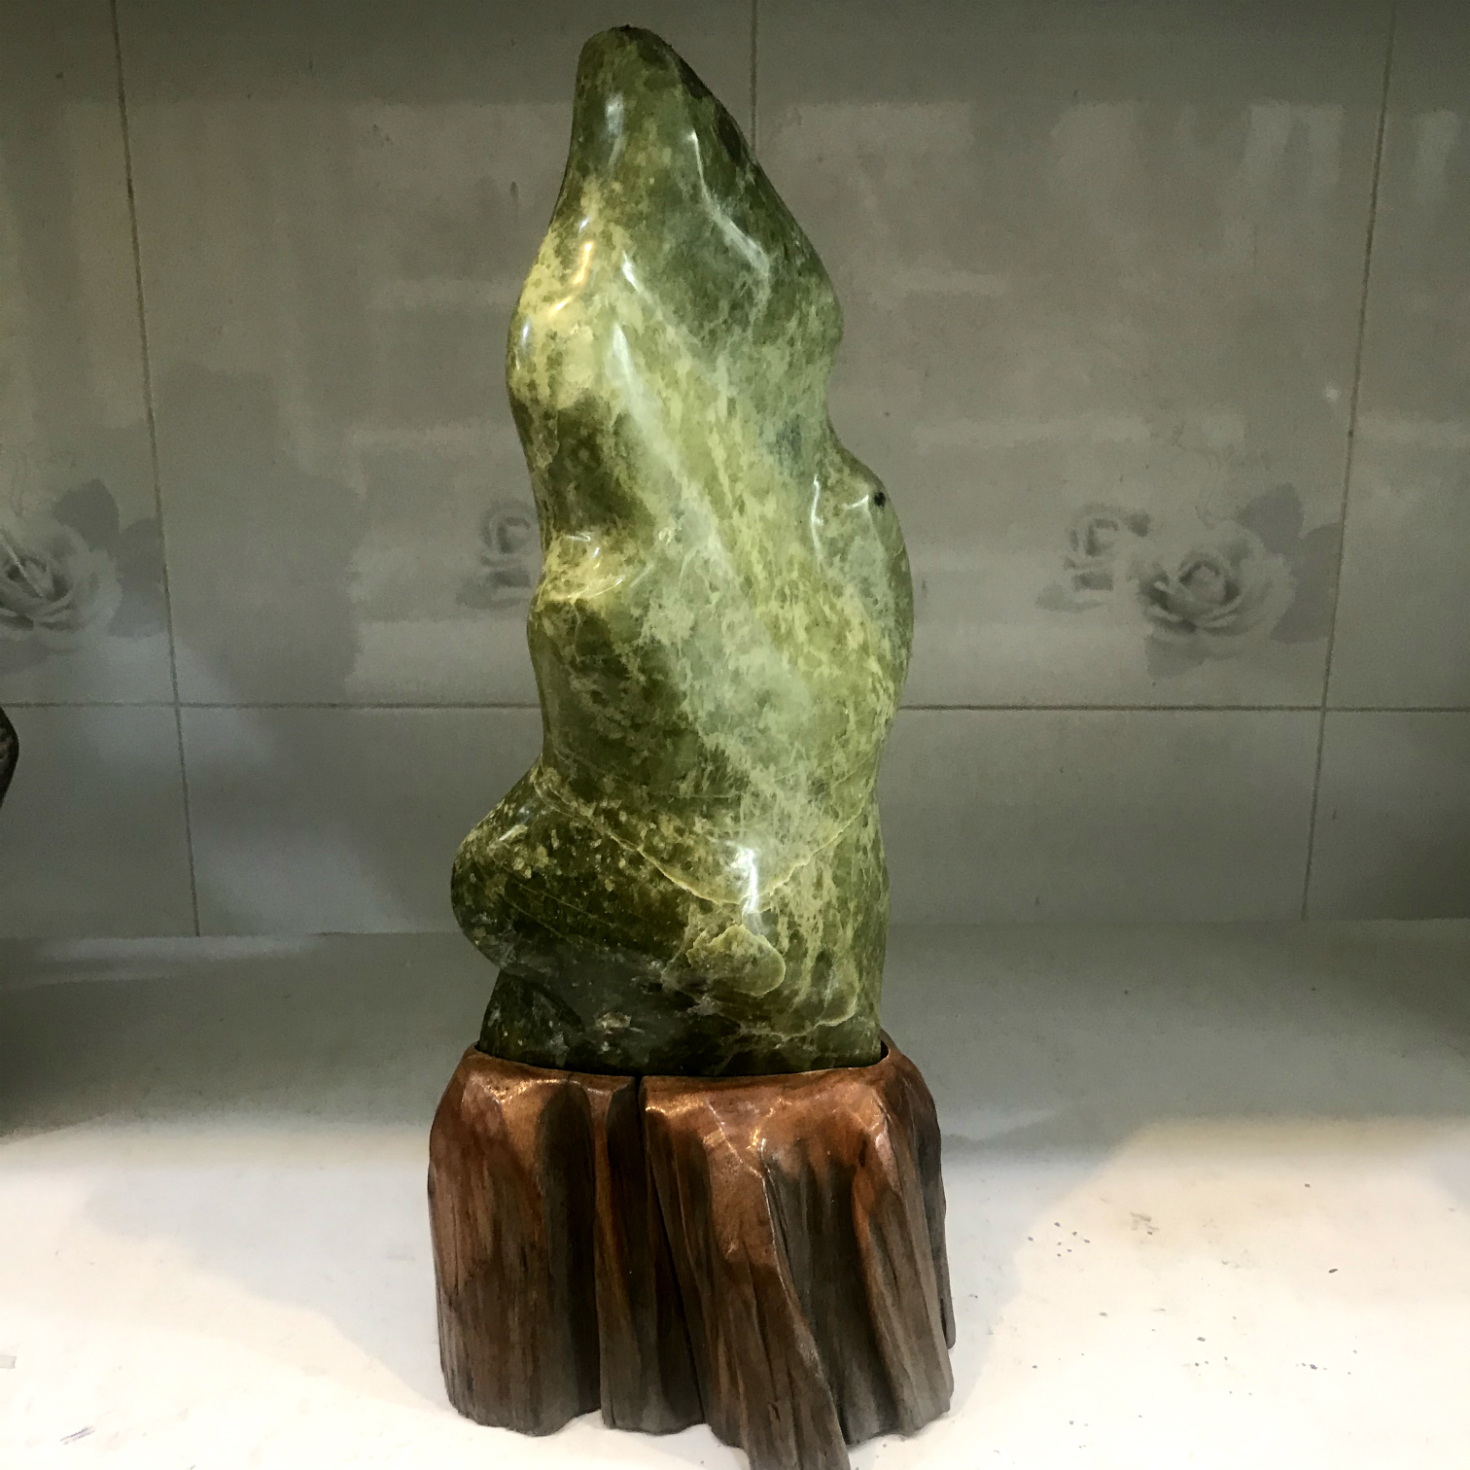 Cây đá phong thủy ngọc tự nhiên để bàn màu xanh cho người mệnh Hỏa và Mộc cao 37 rộng 16 nặng 5 kg